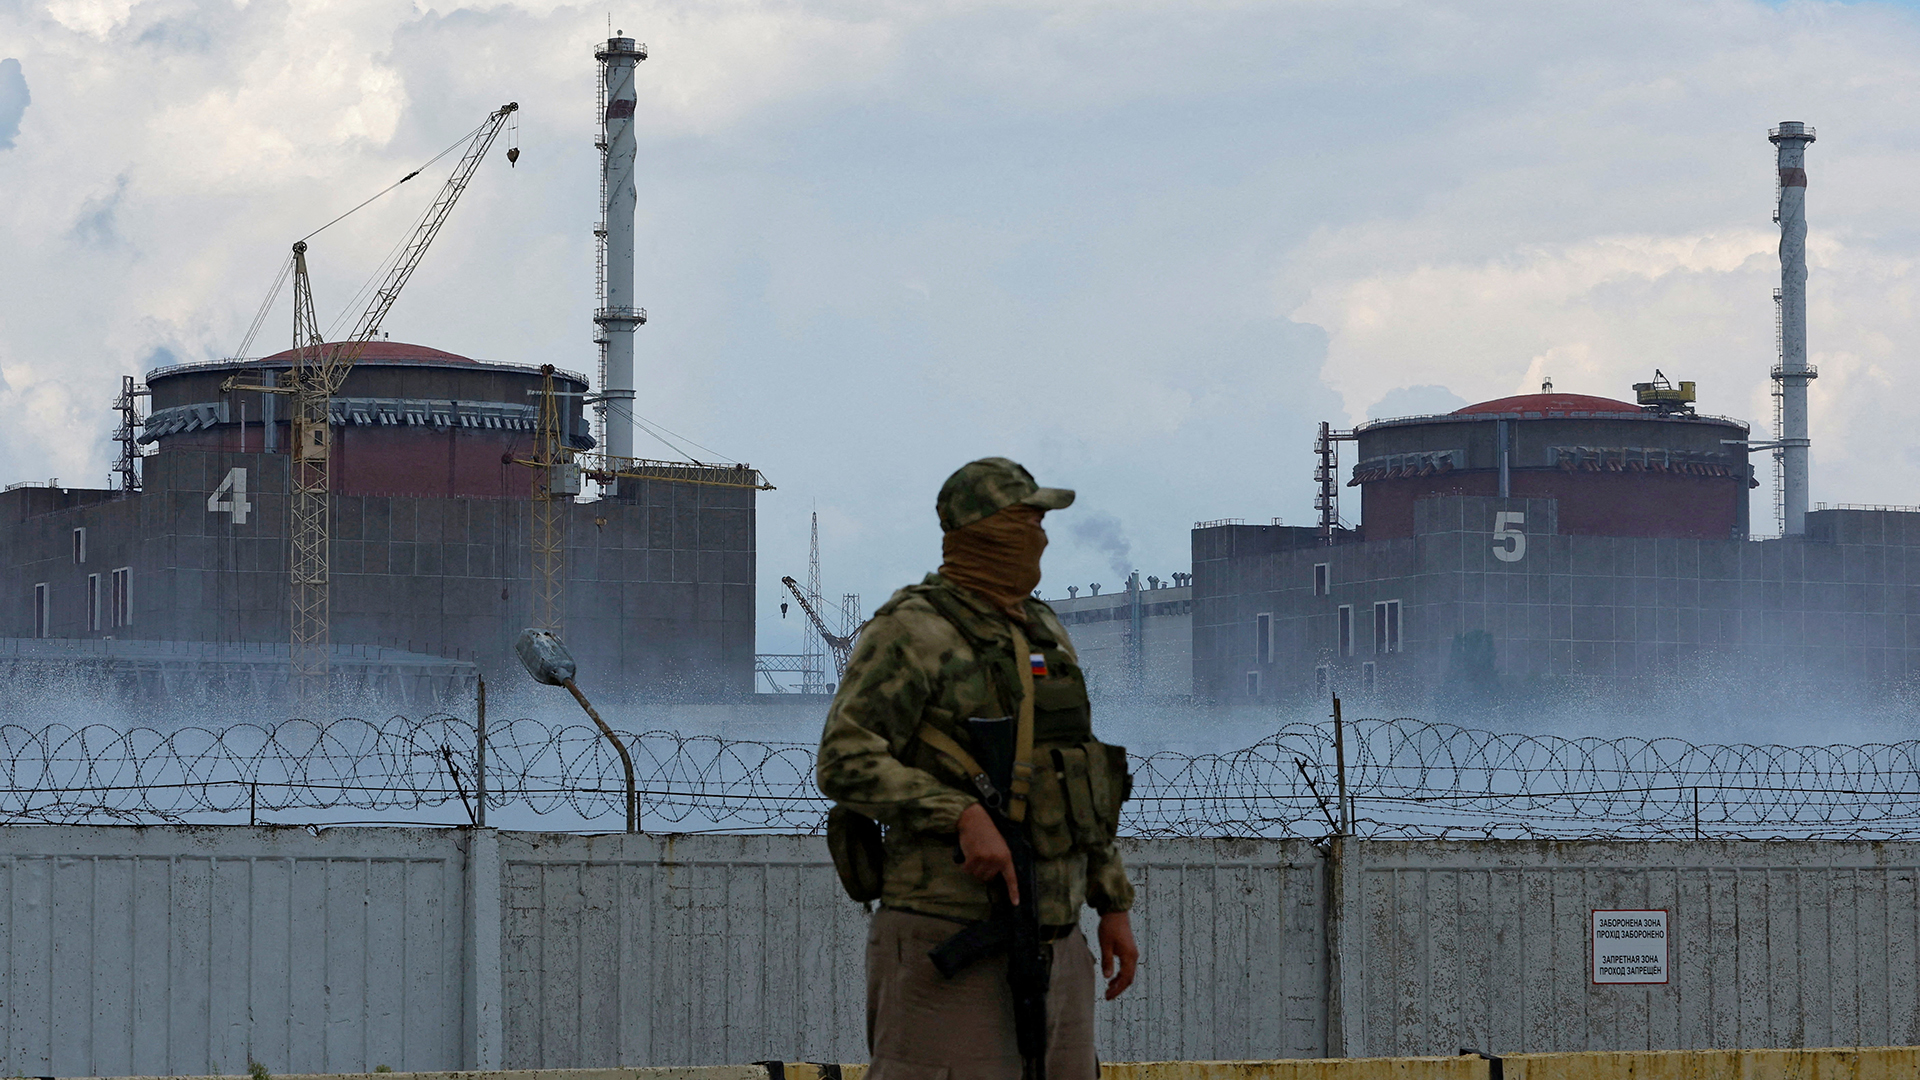 Ein Soldat mit russischer Flagge auf der Uniform vor dem ukrainischen Atomkraftwerk Saporischschja. | REUTERS